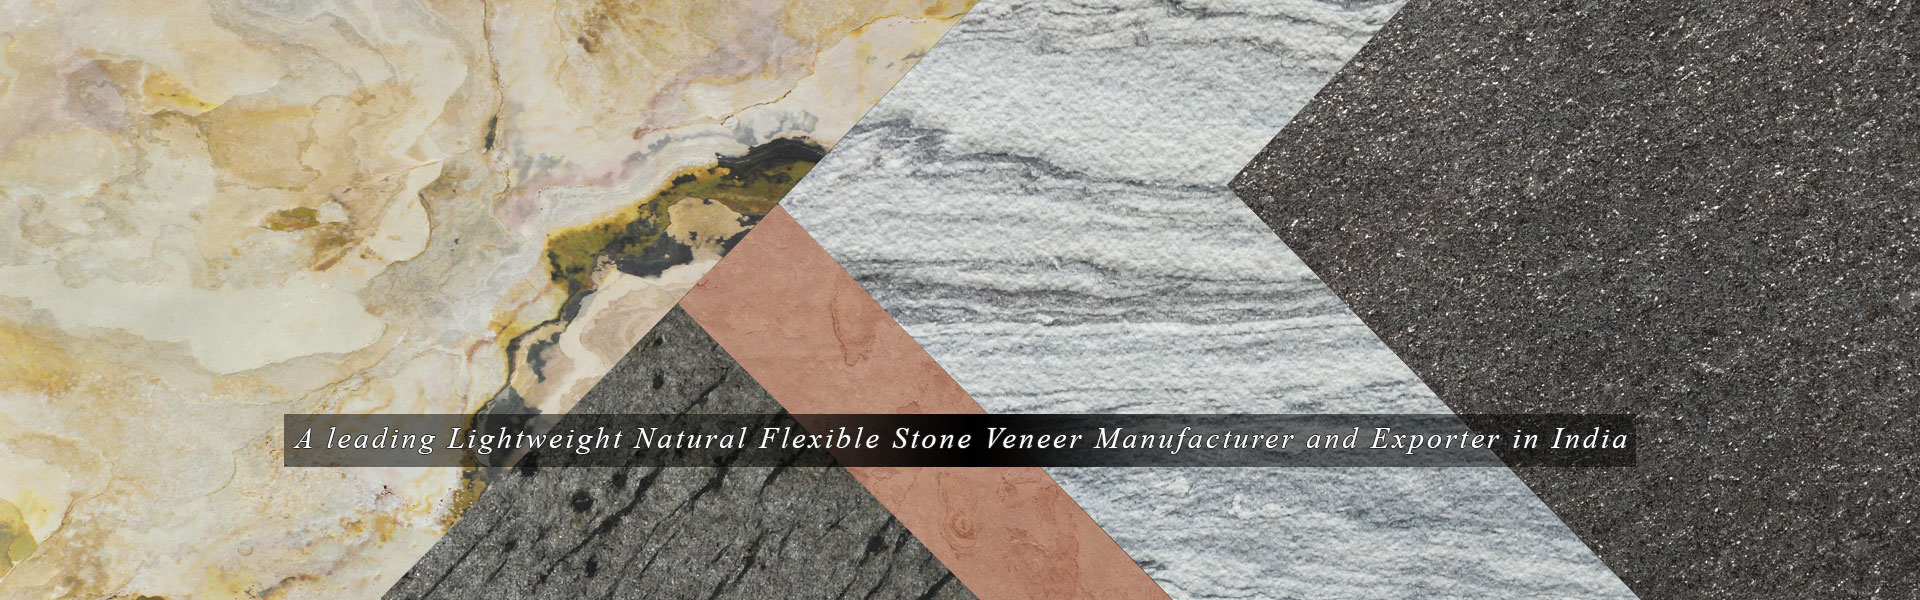 Flexible Stone Veneer Manufacturer Exporter